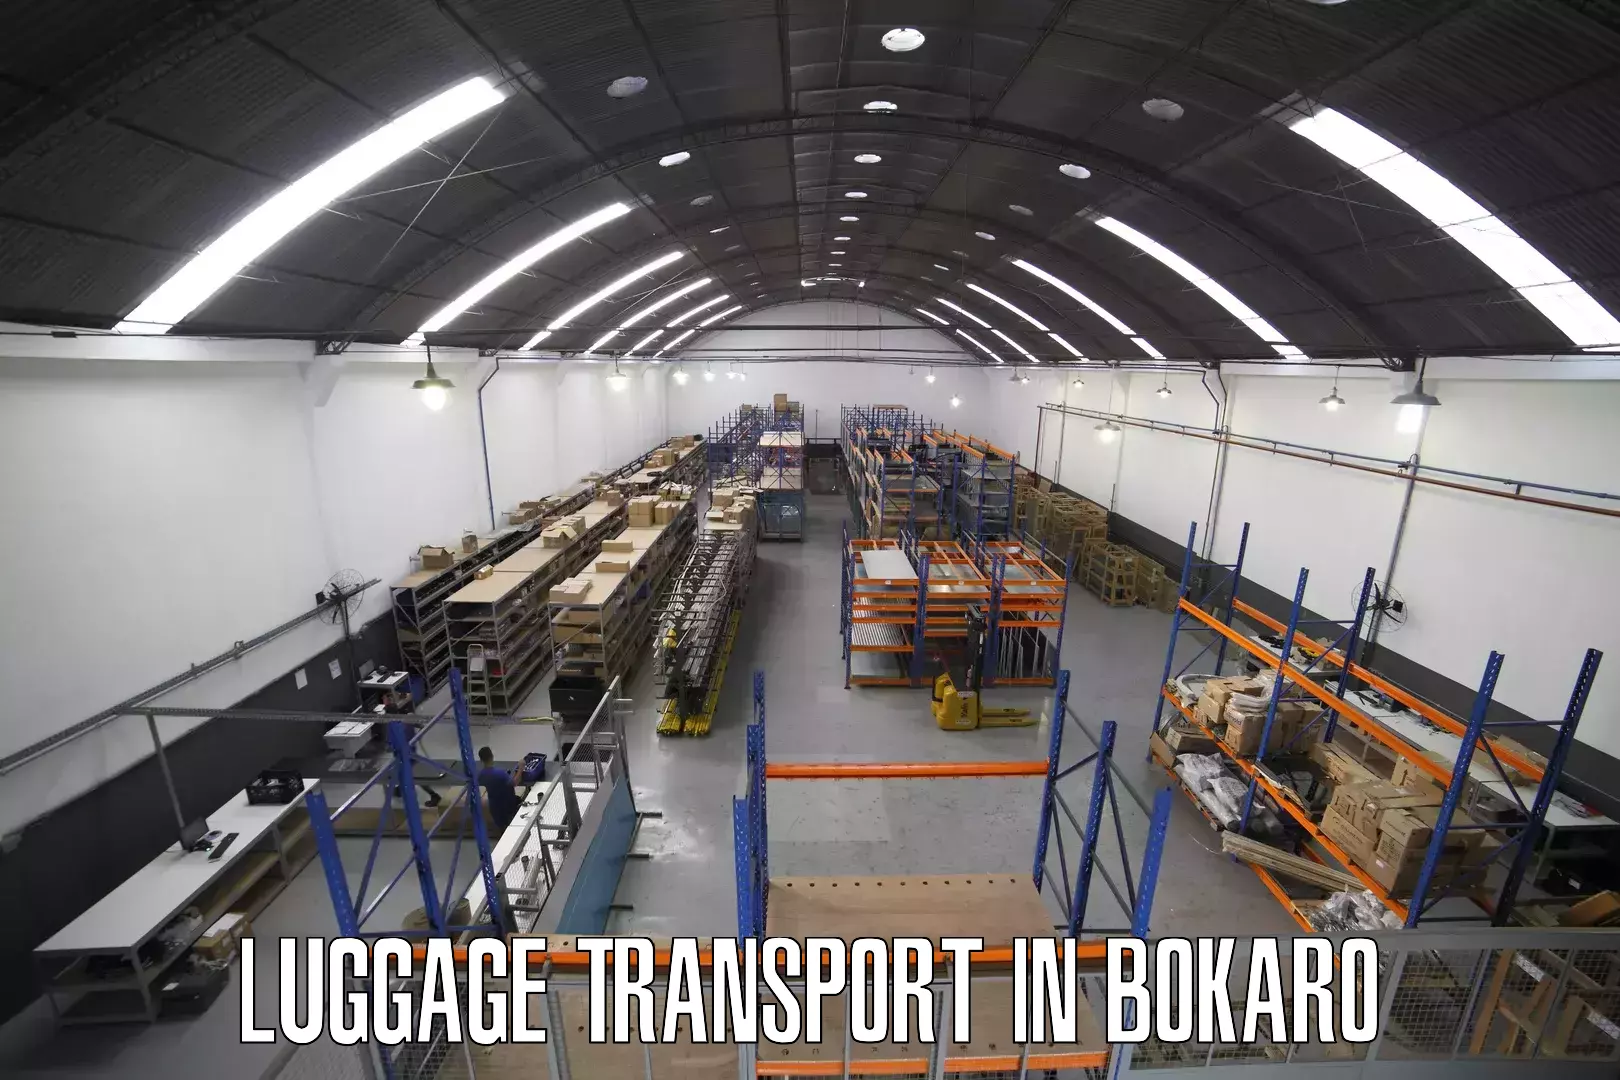 Luggage transit service in Bokaro